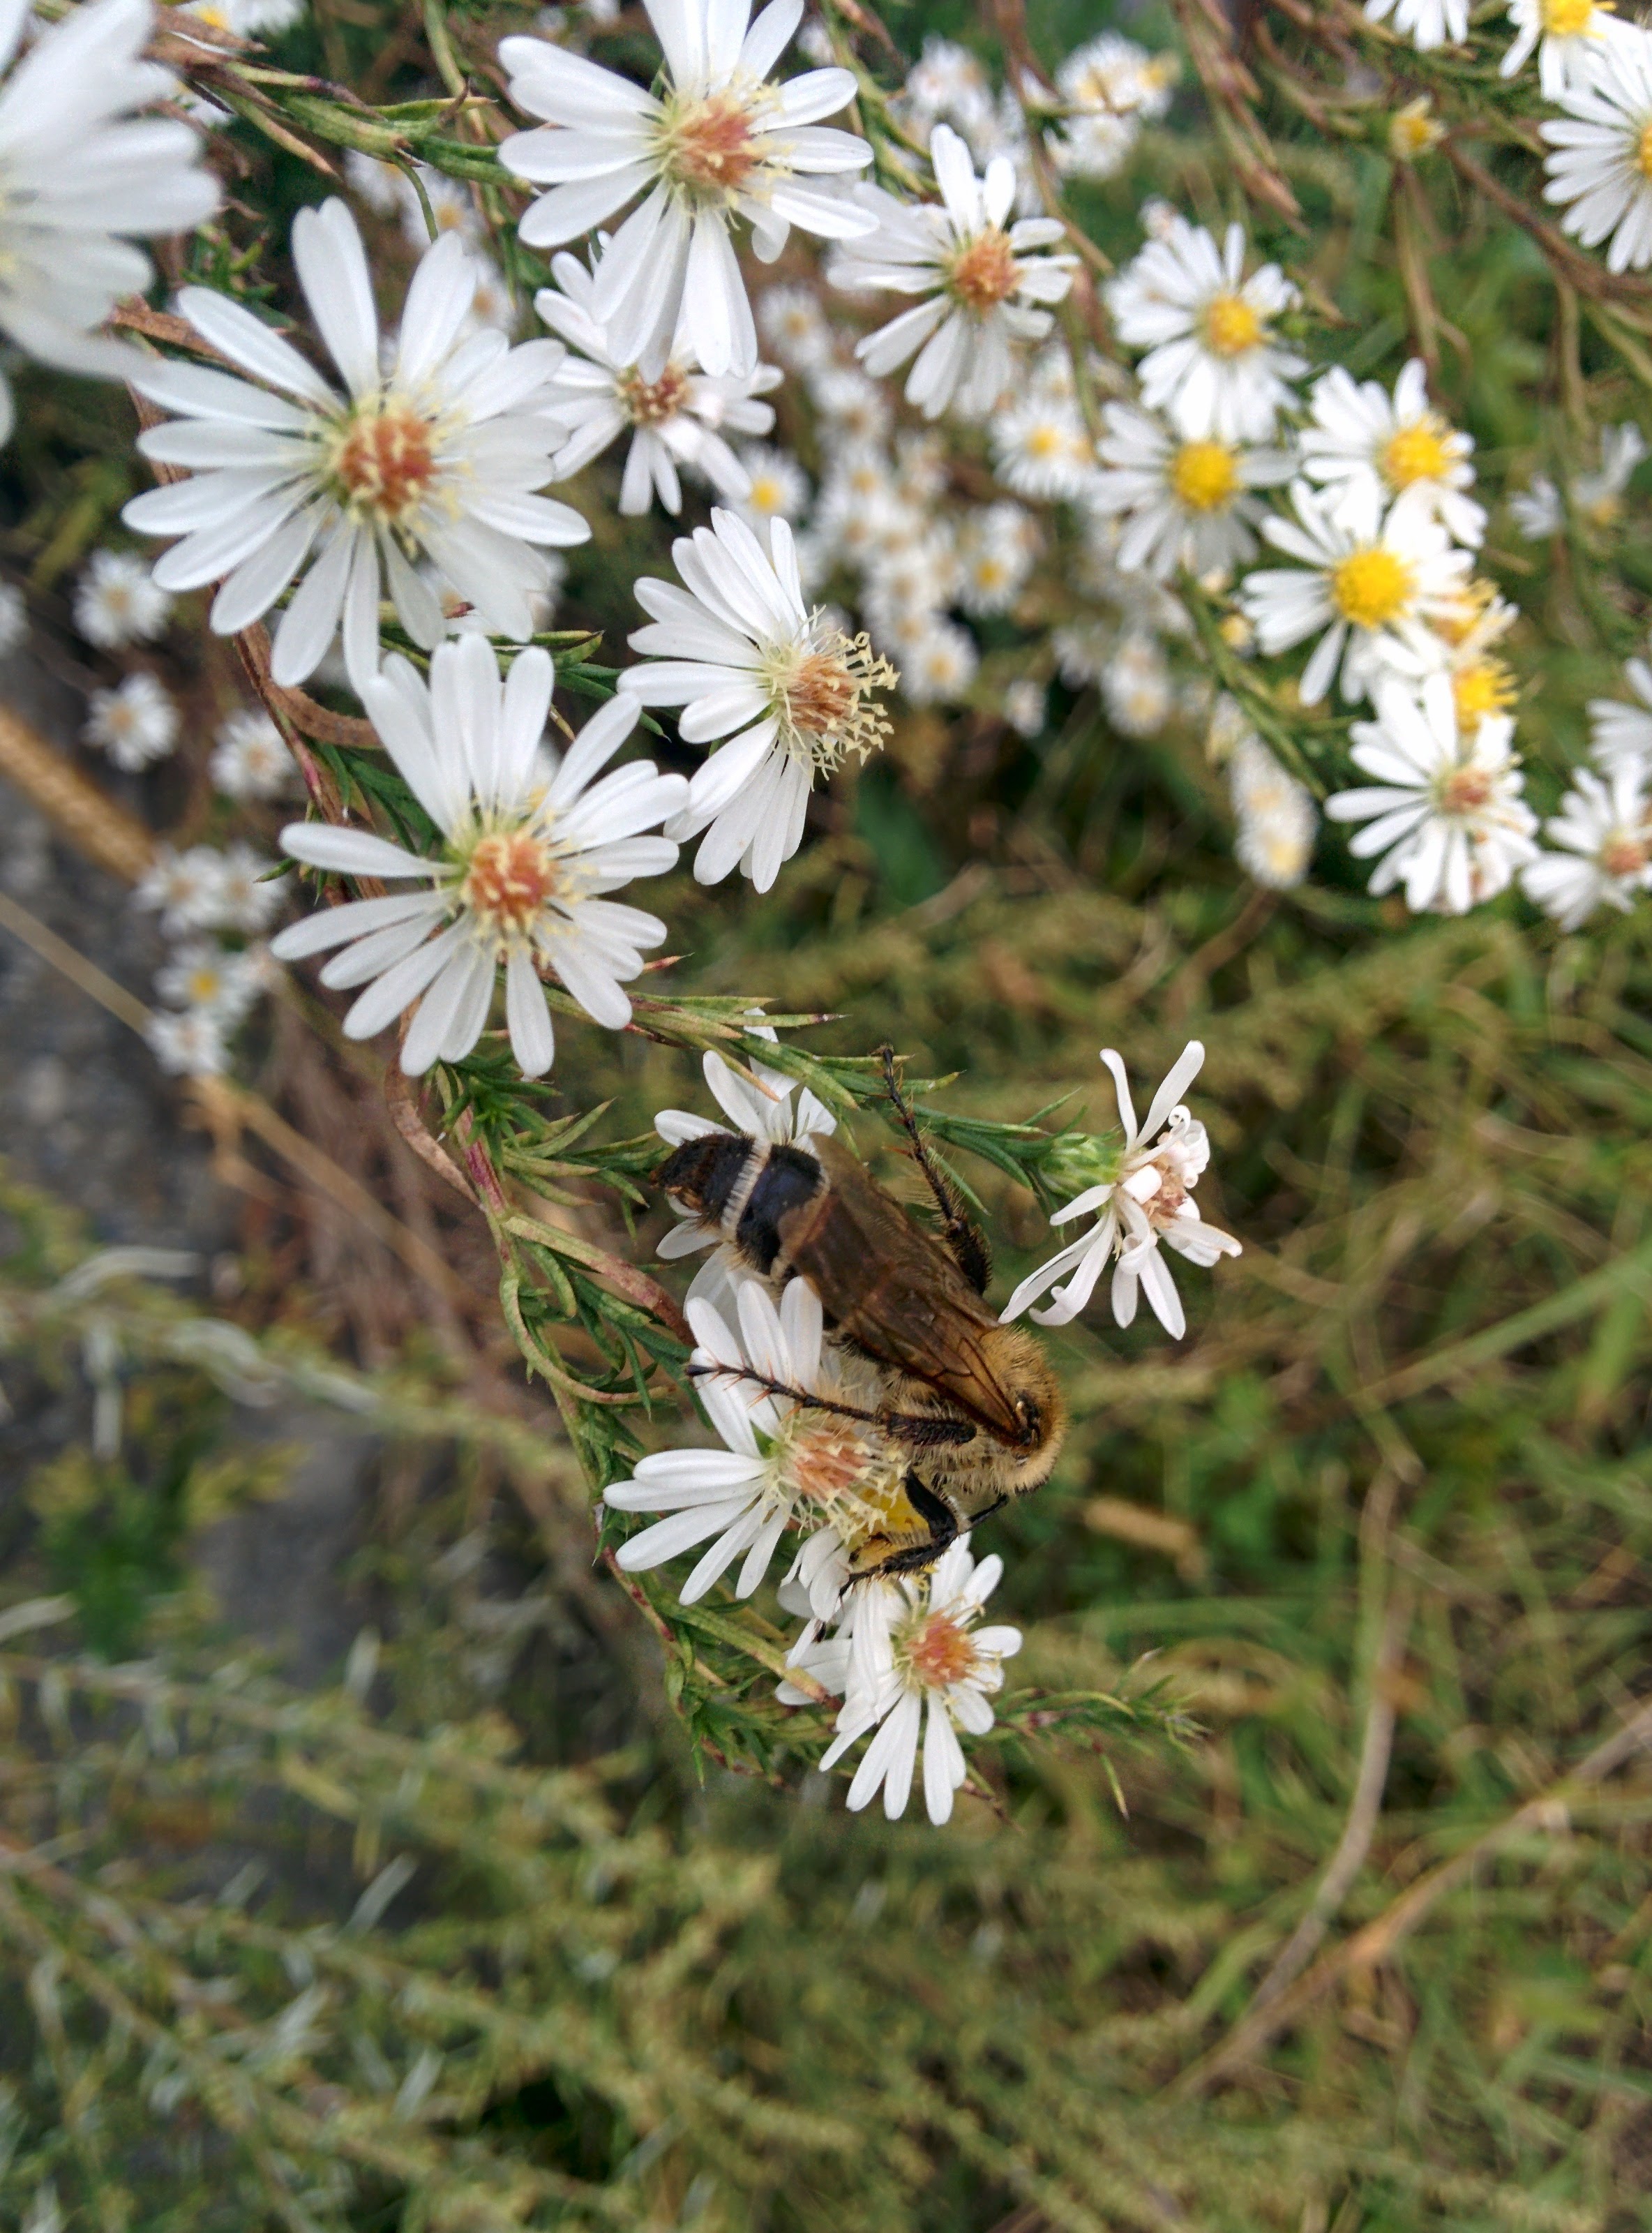 IMG_20151007_152456.jpg 미국쑥부쟁이 꽃숲을 기어서 날아서 구석구석 누비는 배벌